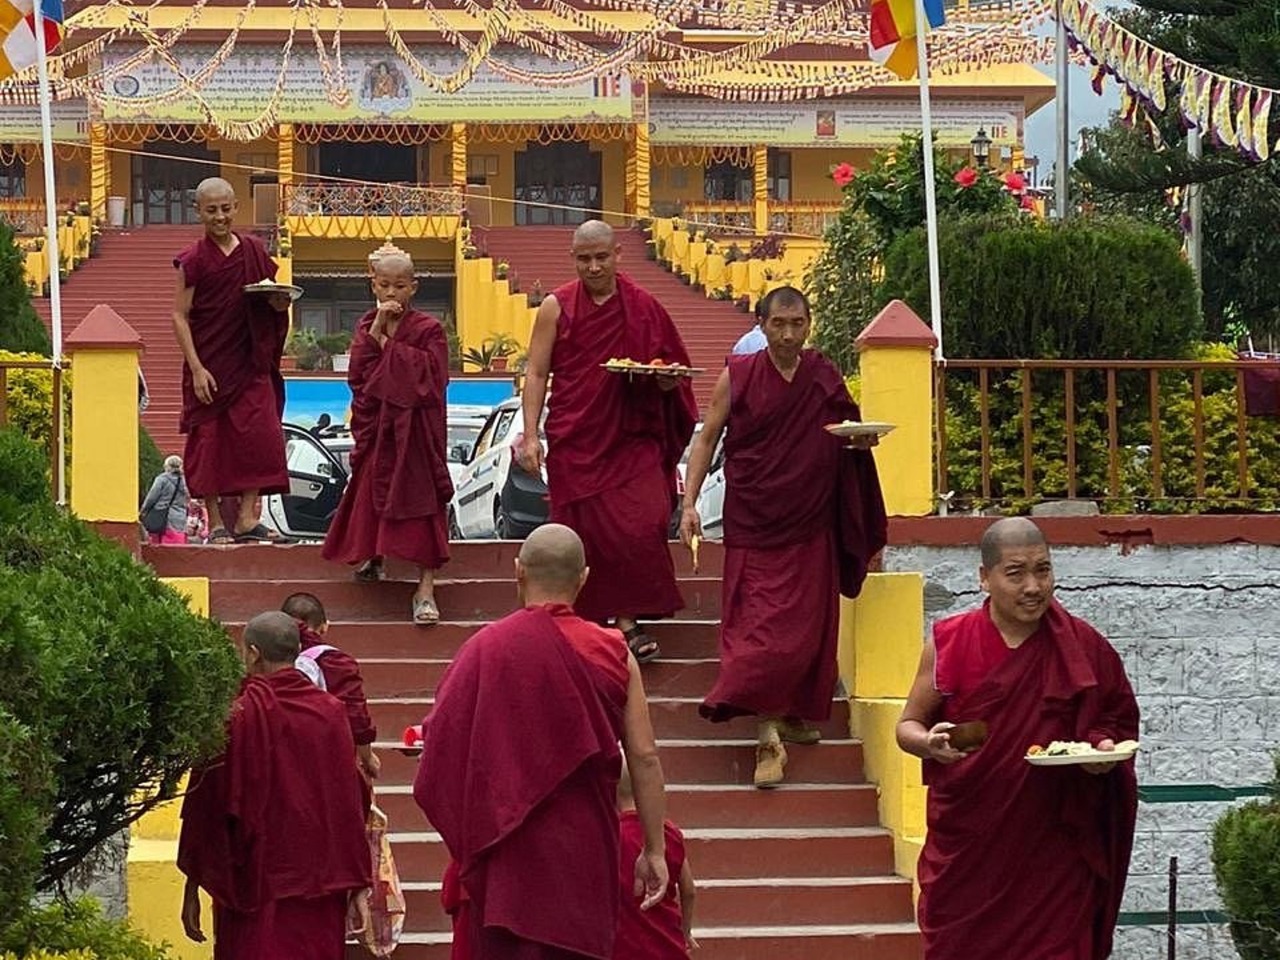  Земля Далай-Ламы — Дхарамсала  | Цена 345$, отзывы, описание экскурсии